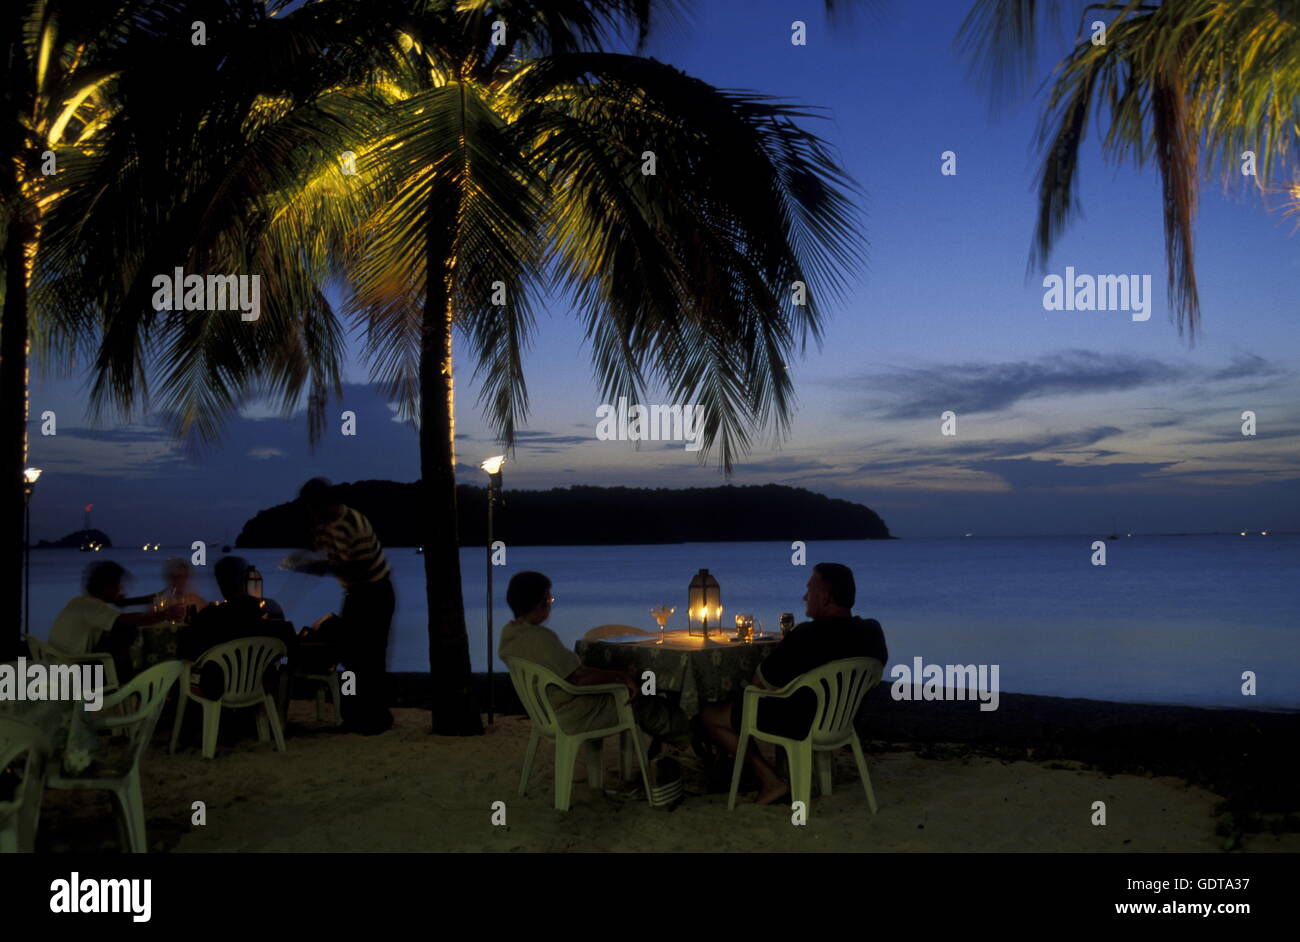 La playa de Pantai Cenang en la costa de la isla de Langkawi, en el noroeste de Malasia Foto de stock